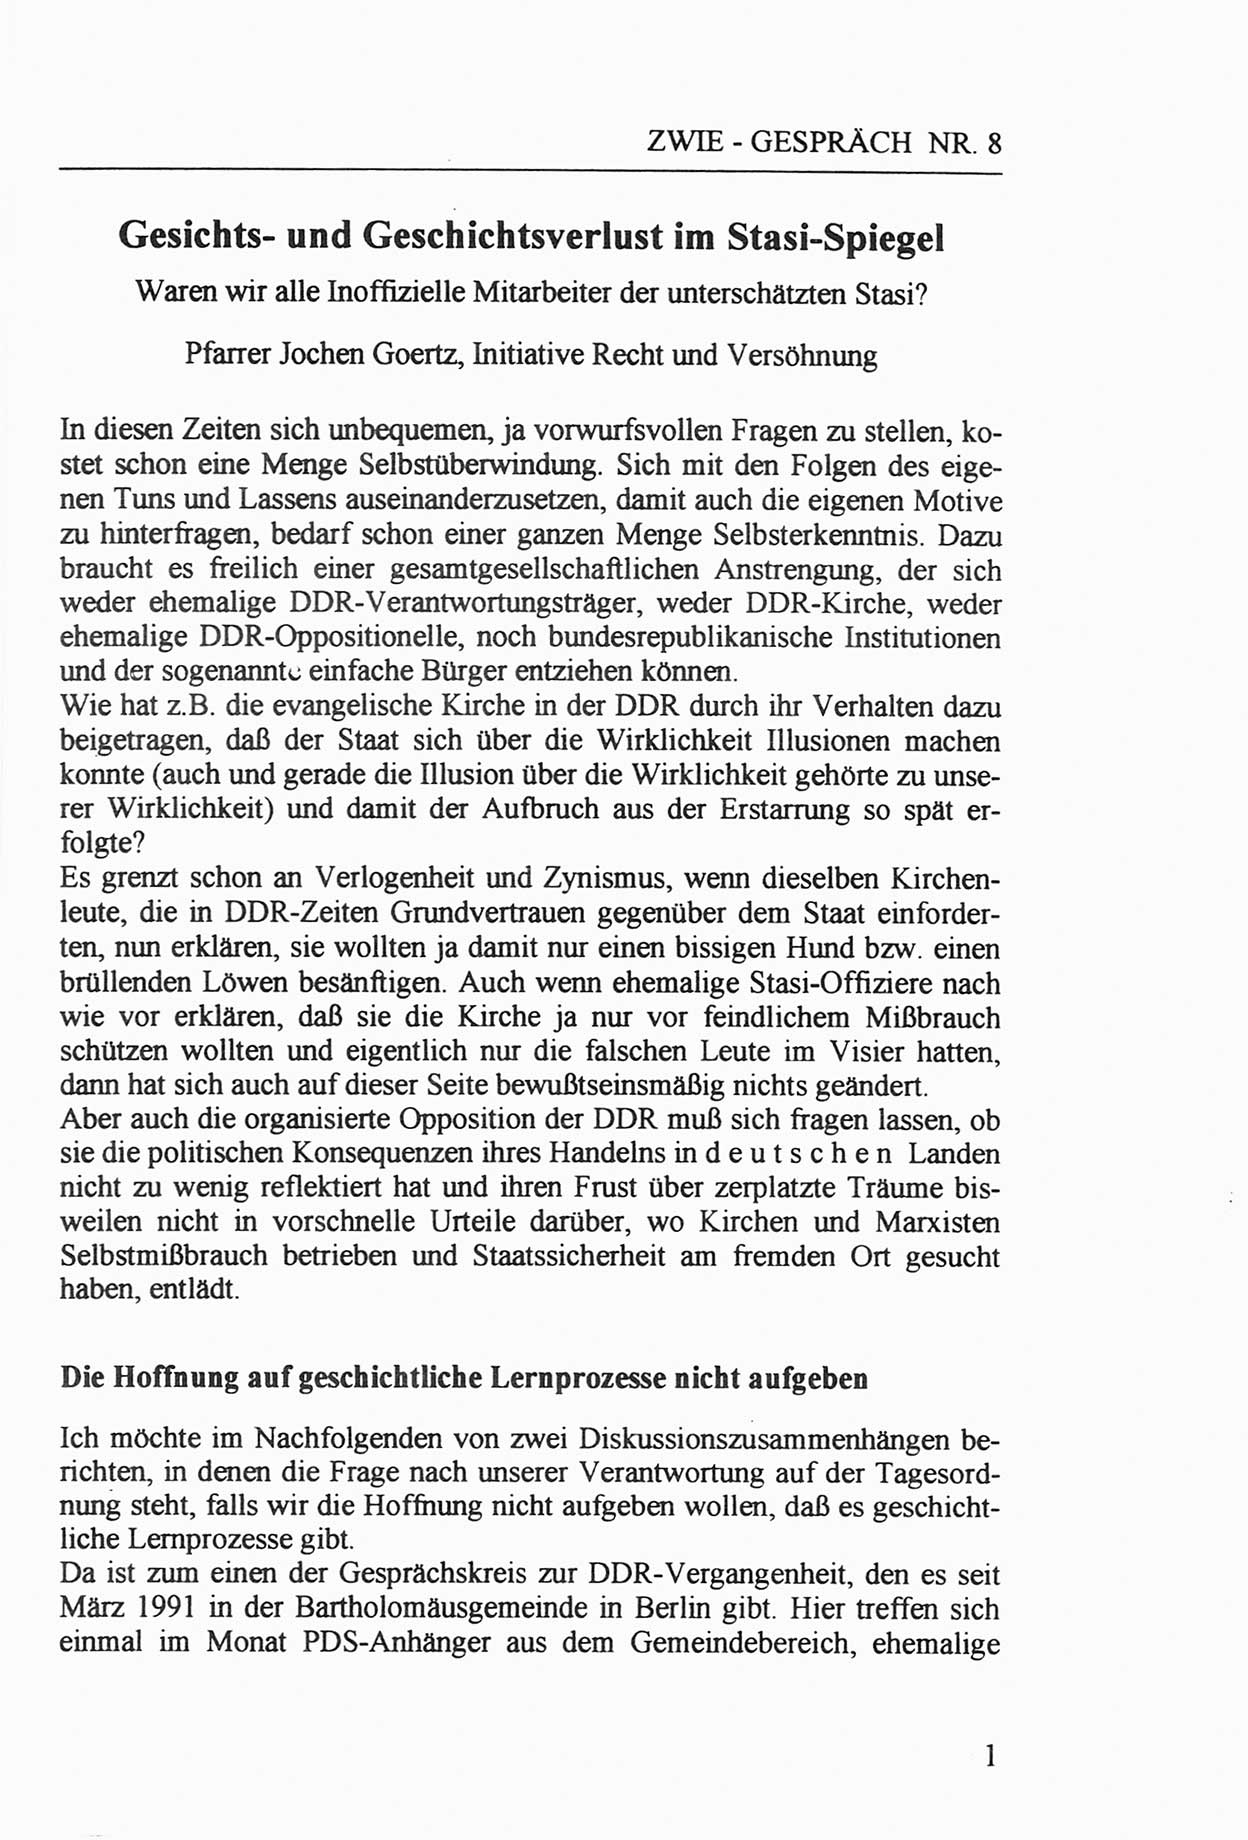 Zwie-Gespräch, Beiträge zur Aufarbeitung der Staatssicherheits-Vergangenheit [Deutsche Demokratische Republik (DDR)], Ausgabe Nr. 8, Berlin 1992, Seite 1 (Zwie-Gespr. Ausg. 8 1992, S. 1)